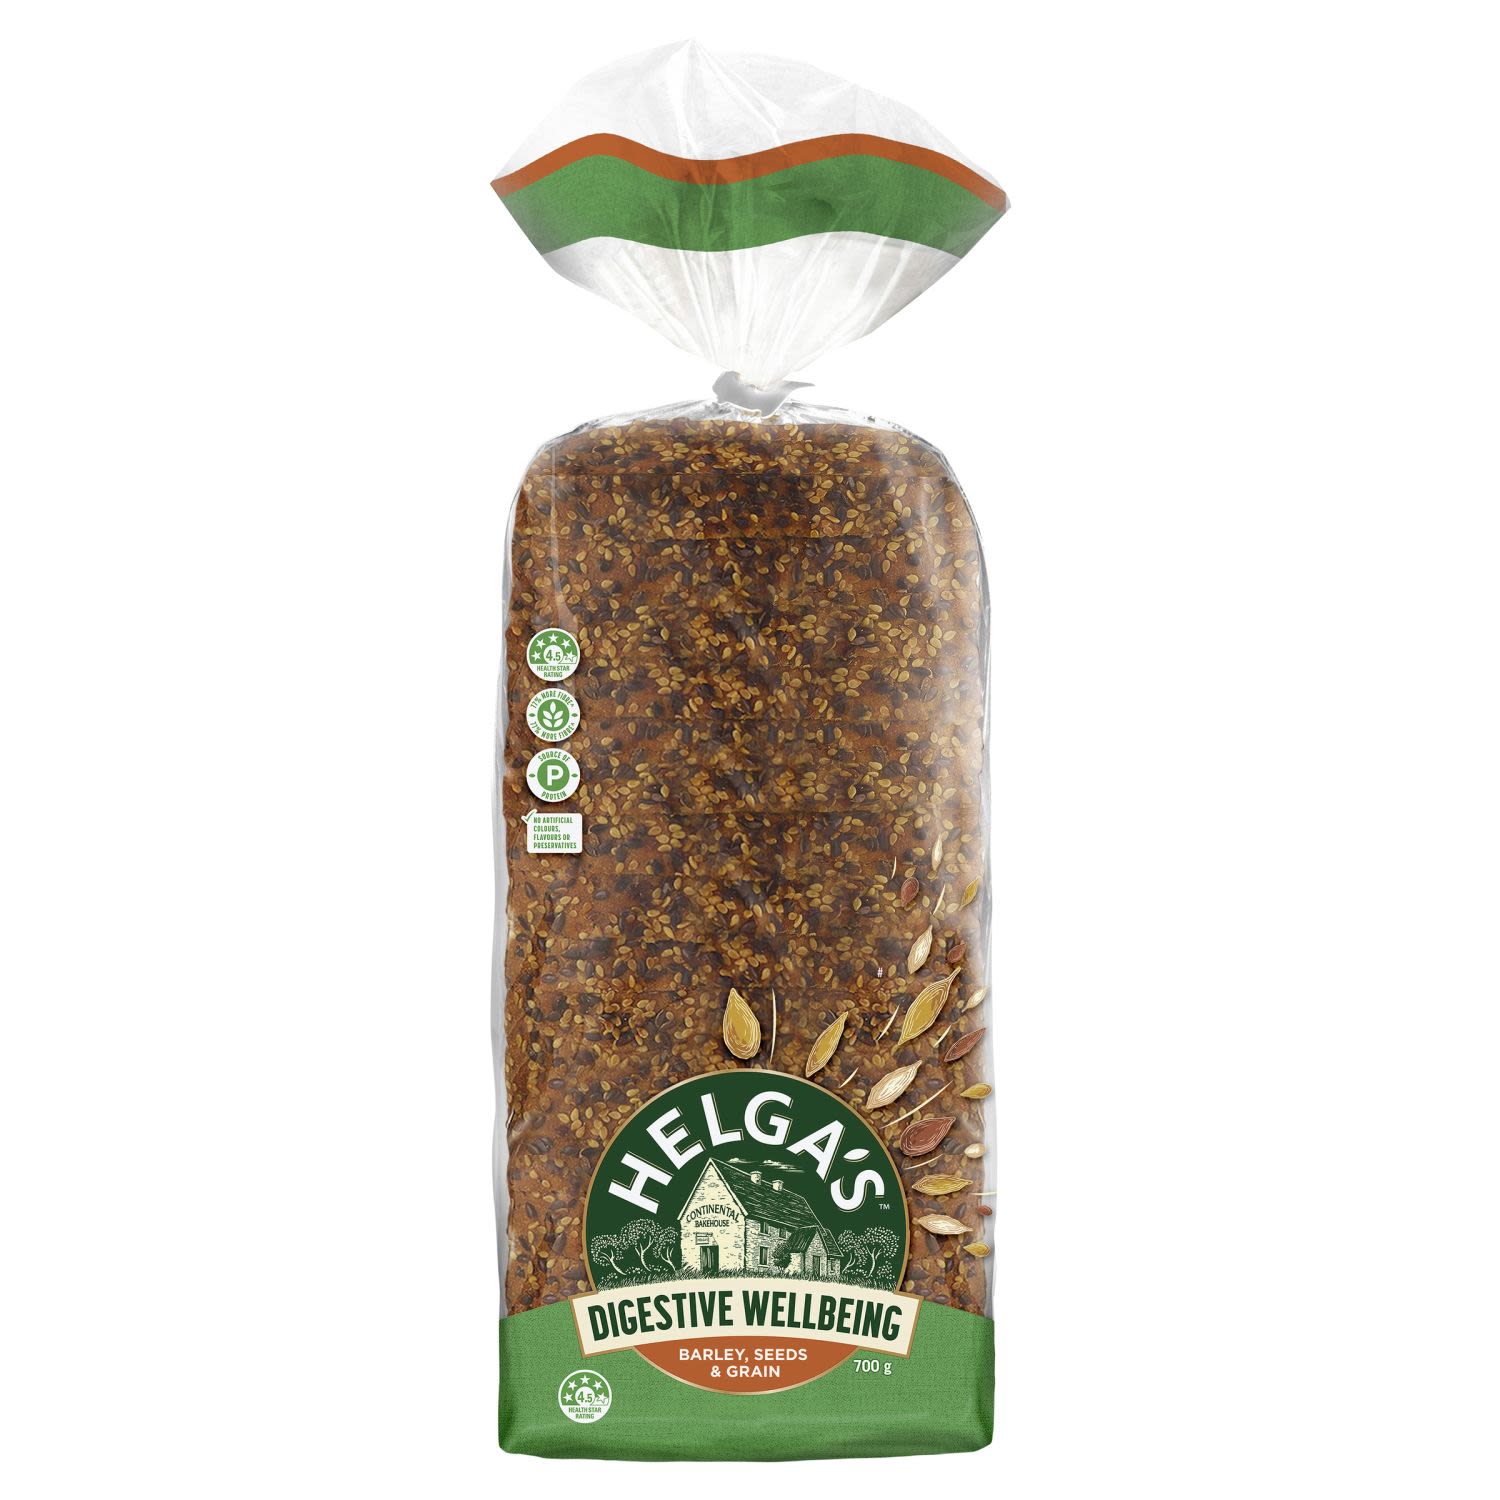 Helga's Digestive Wellbeing Barley Seeds & Grain, 700 Gram